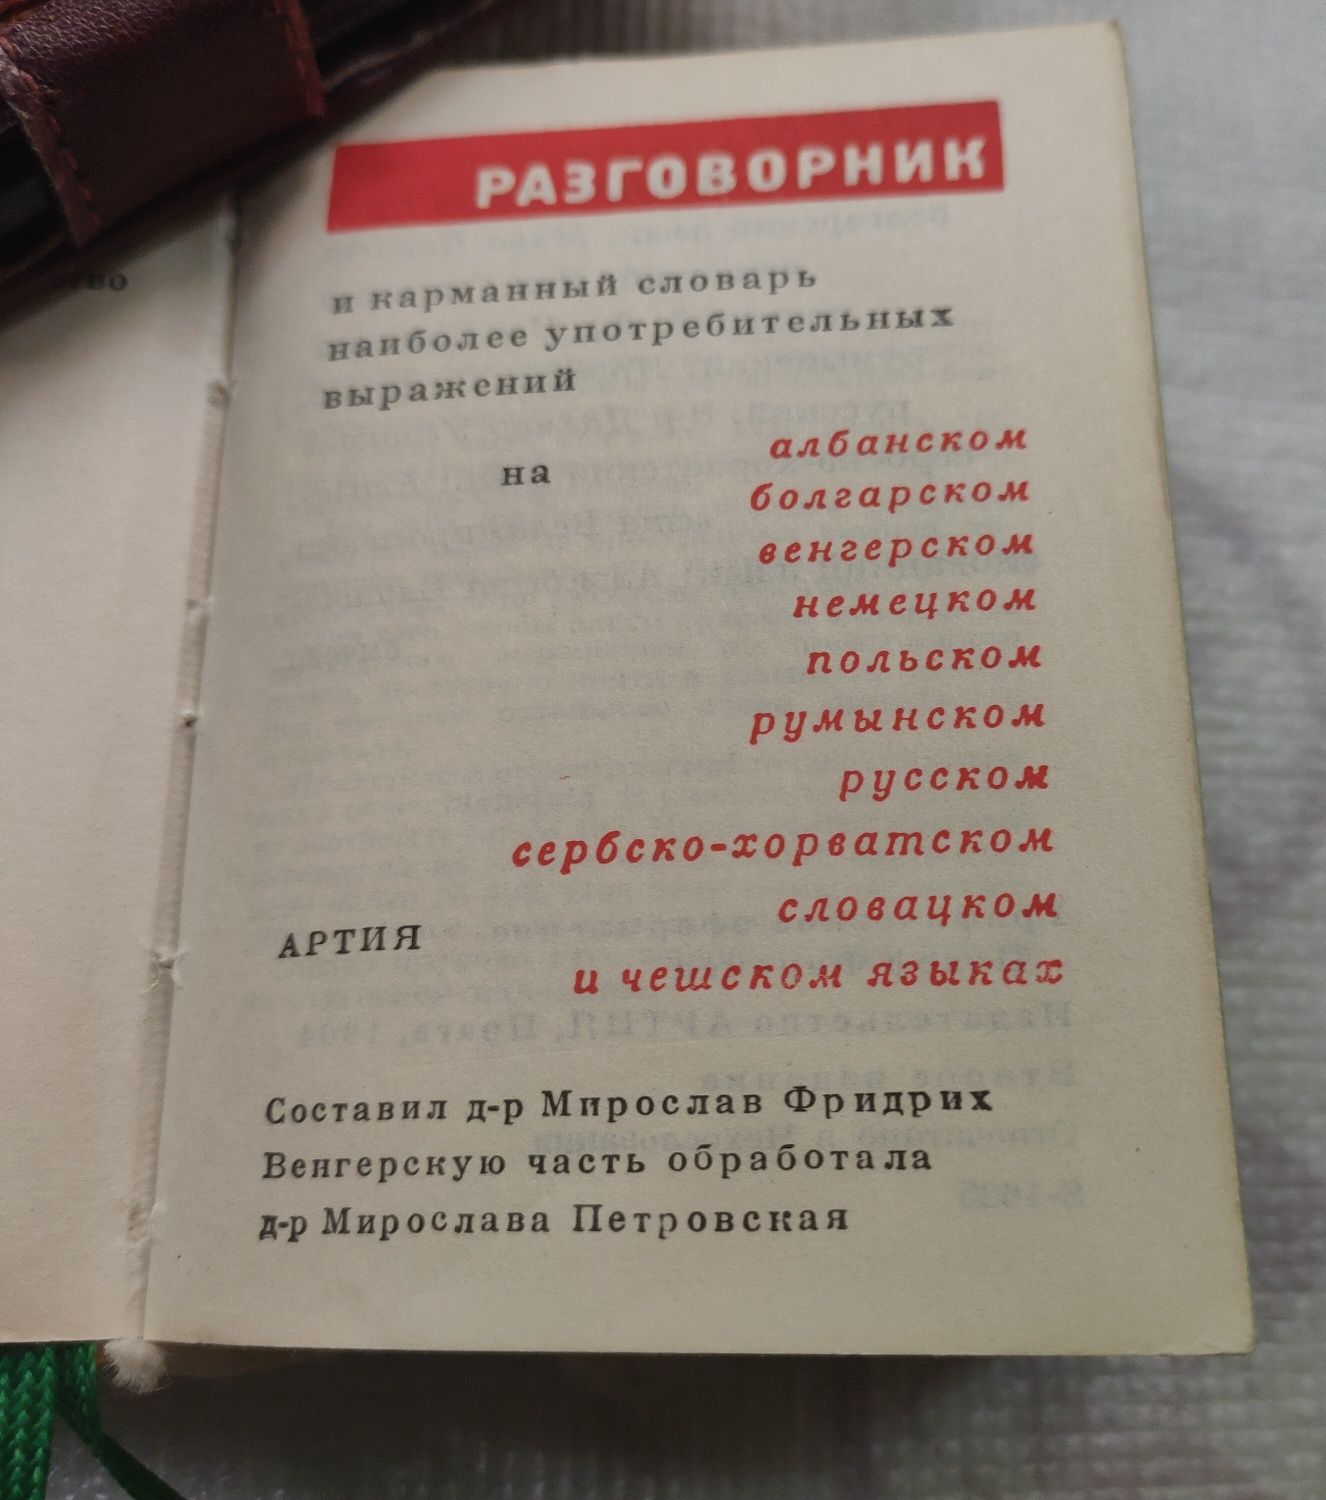 Разговорник карманный словарь , 1964